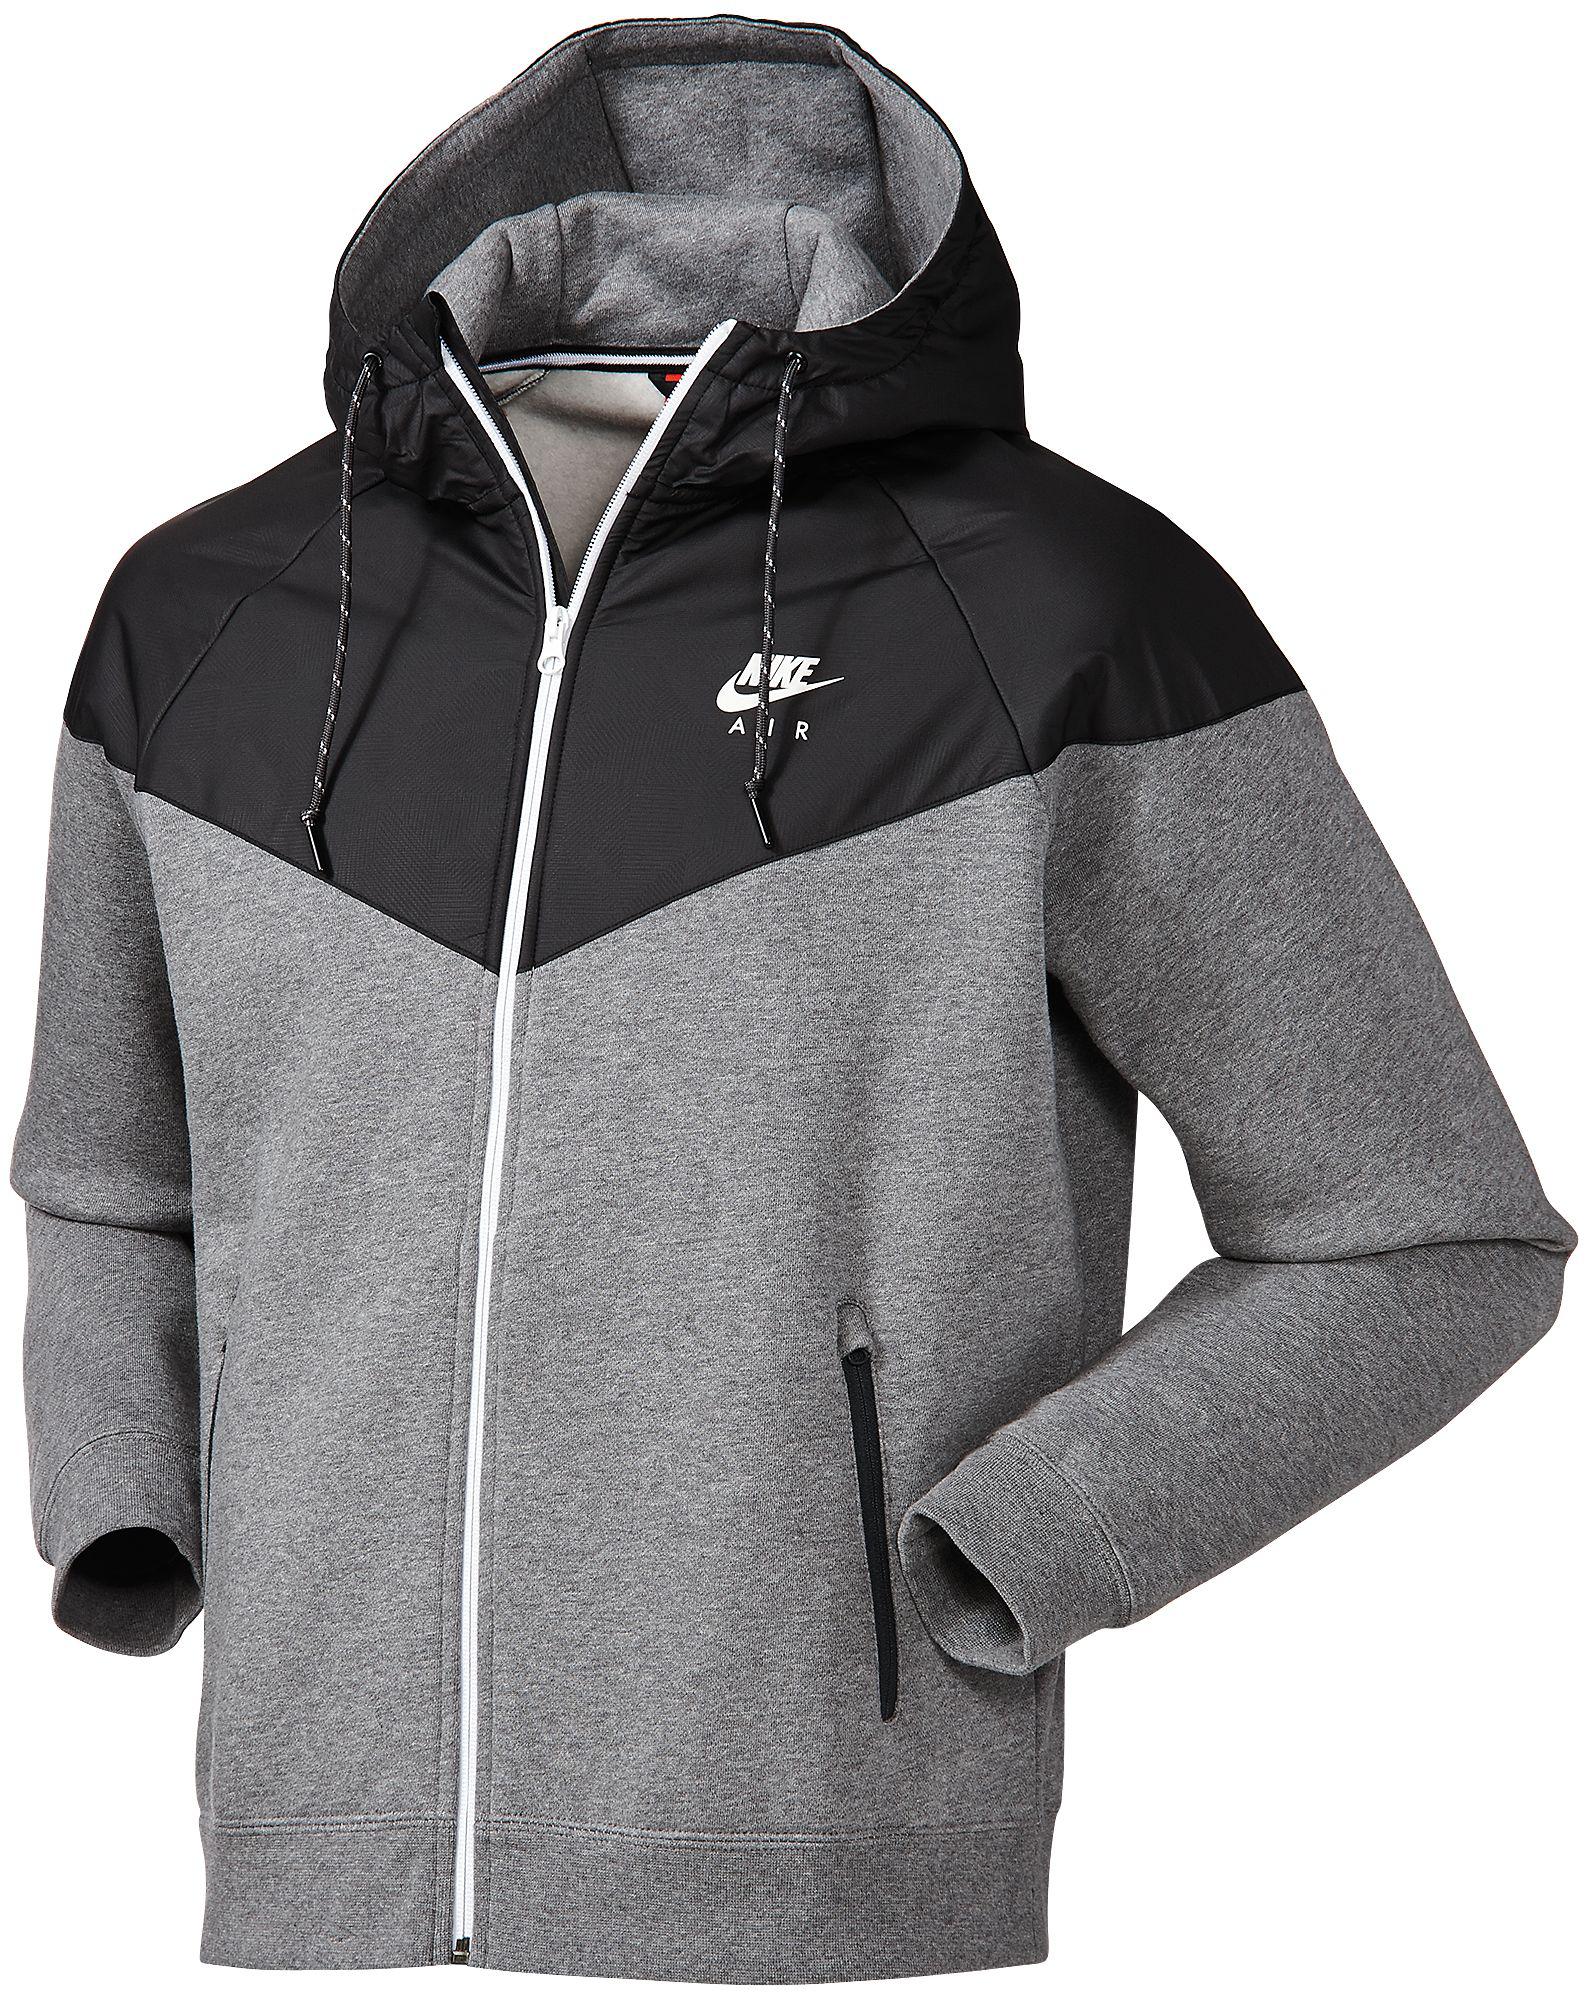 Nike Fleece Windrunner Hybrid Full Zip Hoodie in Carbon Heather (Gray) for  Men - Lyst